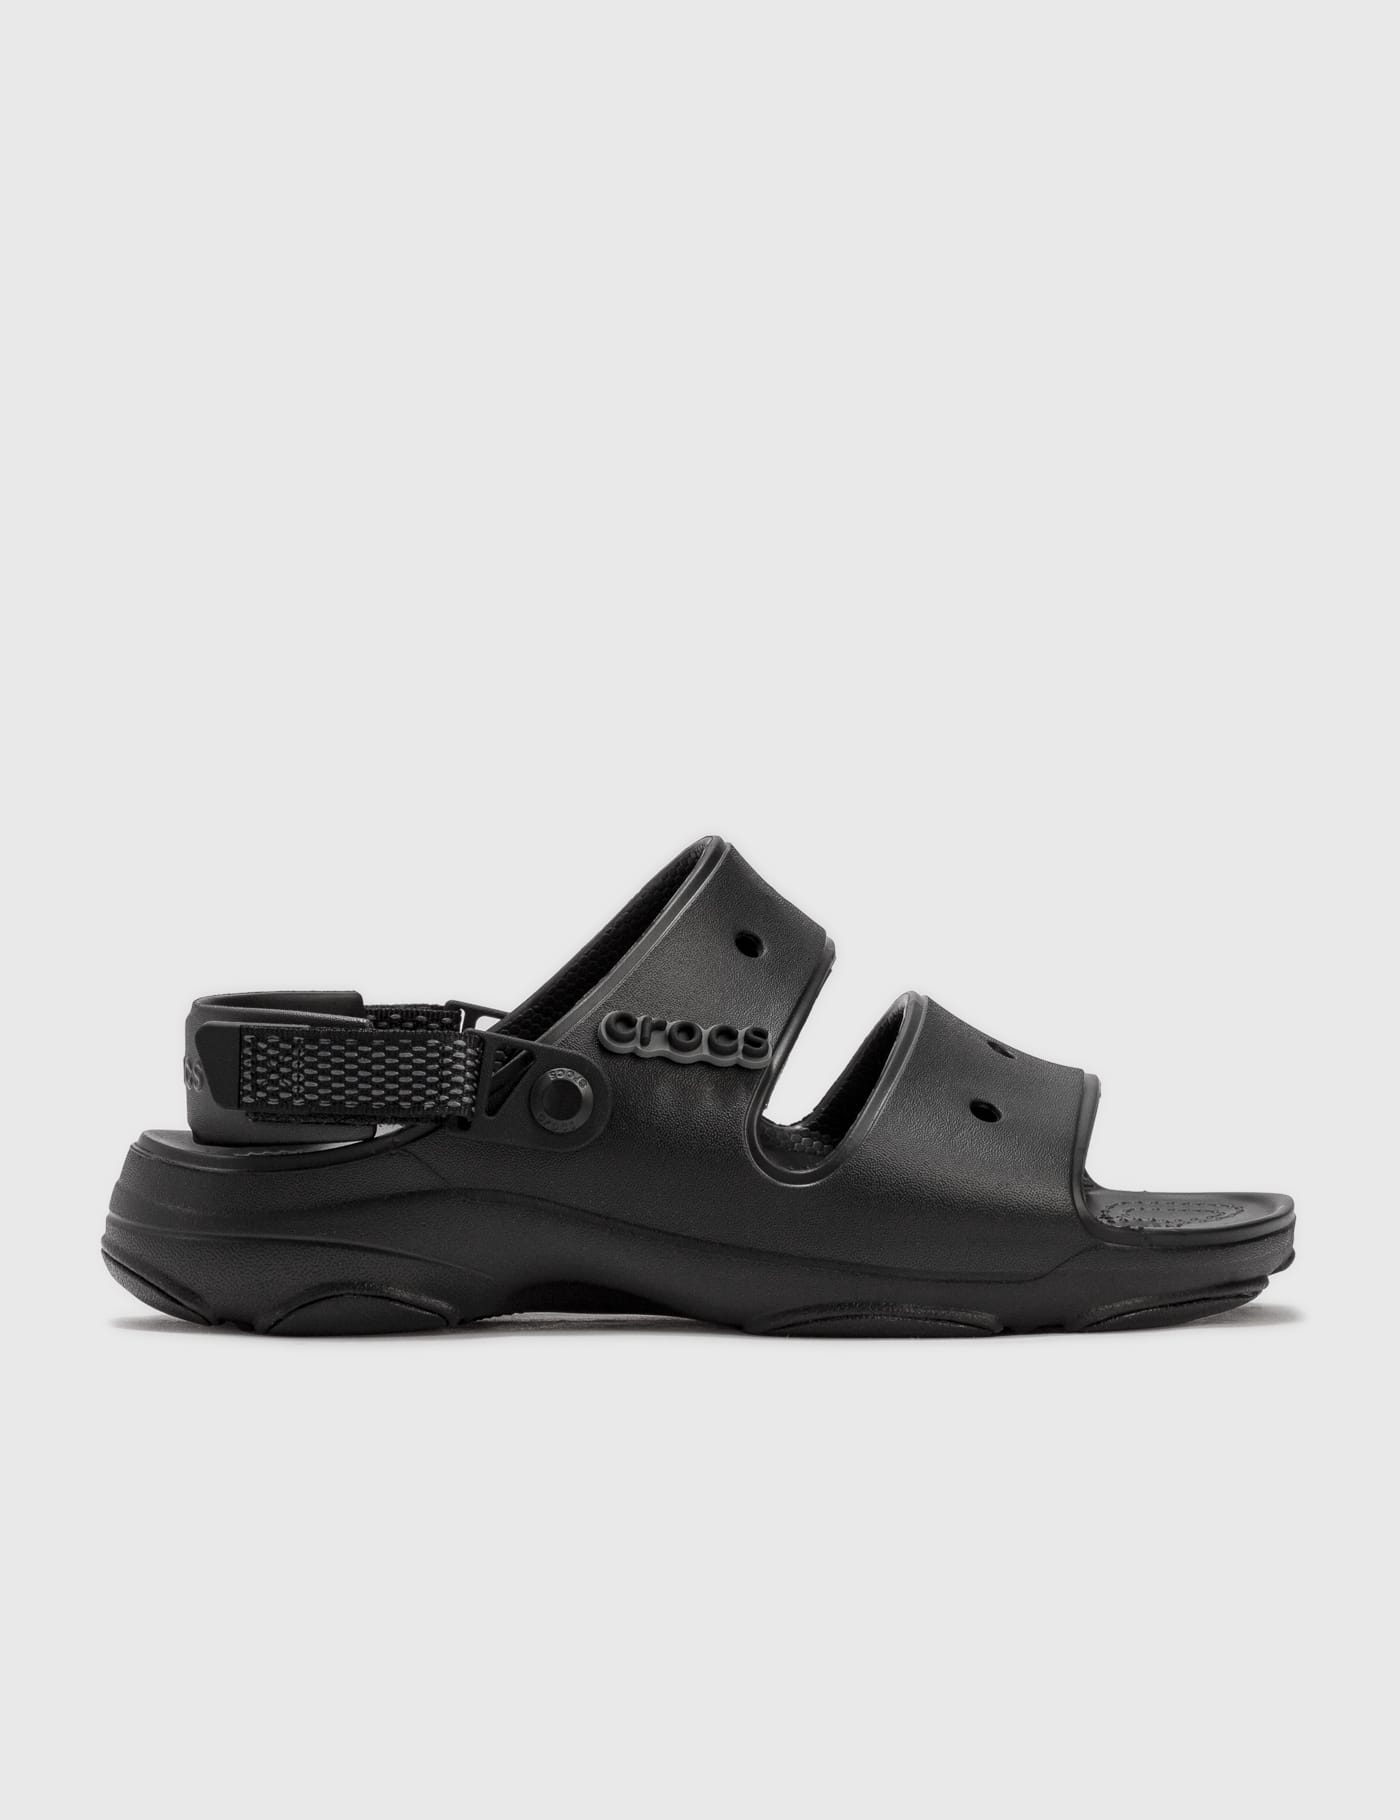 Crocs Classic All Terrain Sandals